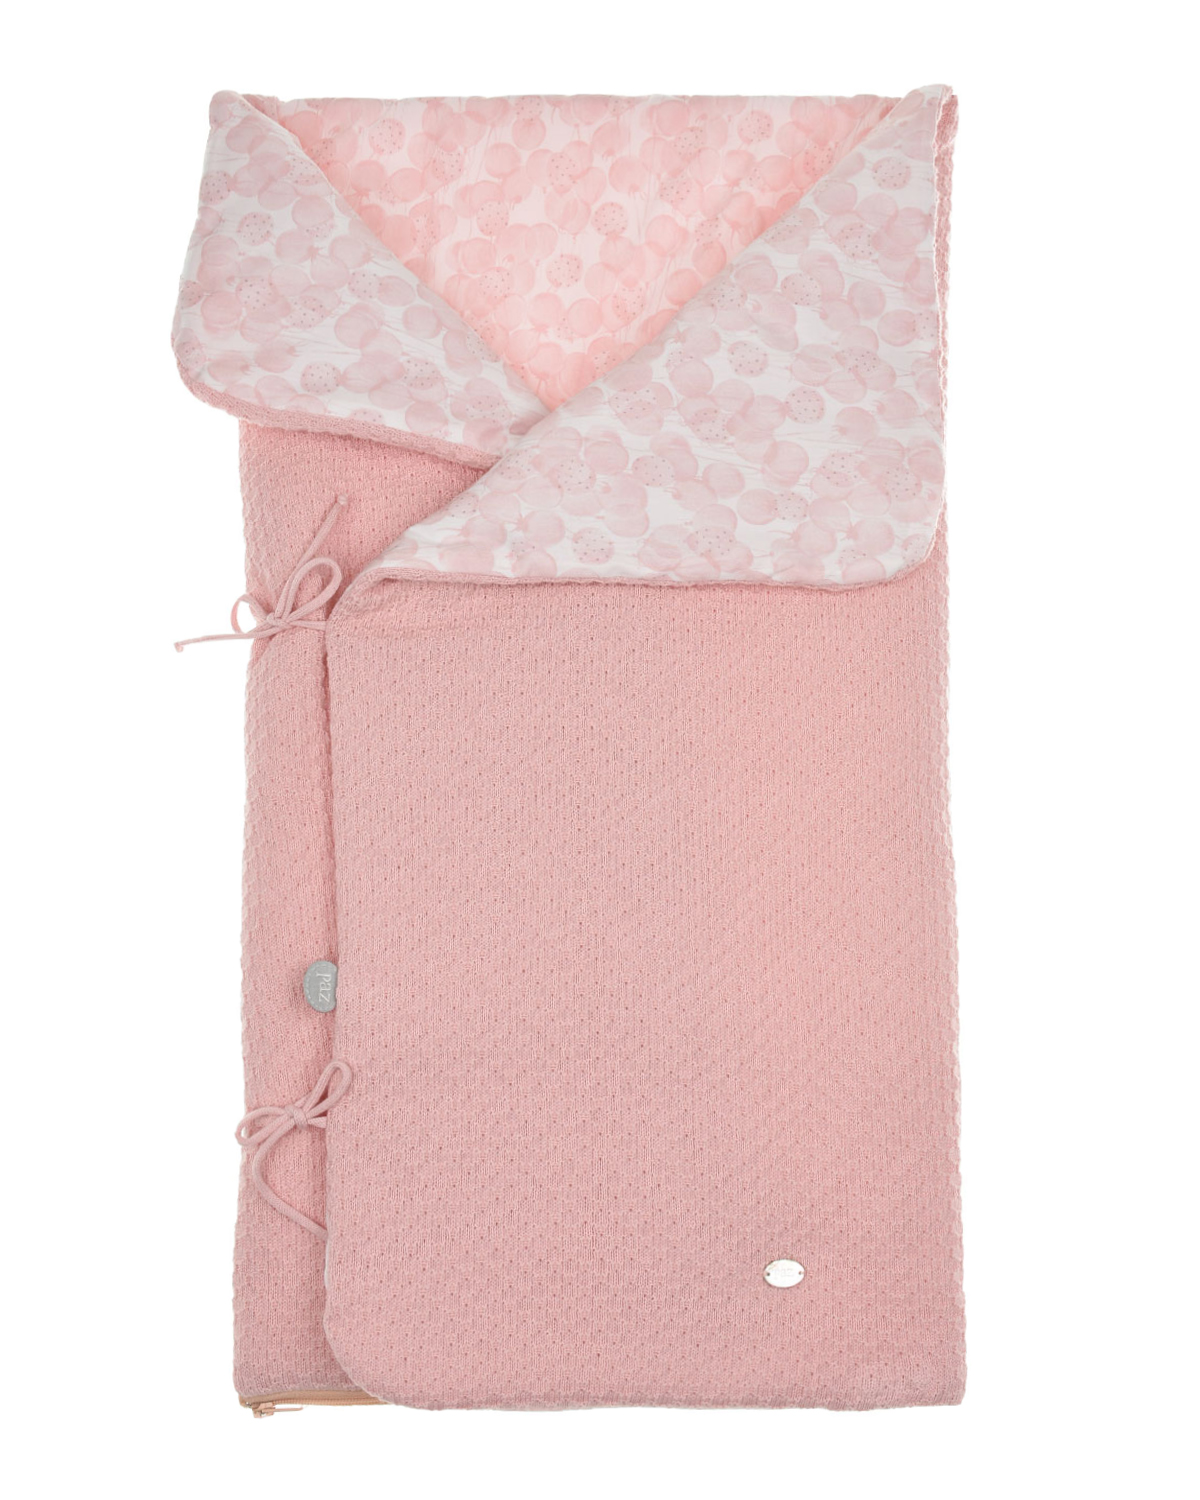 Вязаный конверт с цветочным принтом на подкладке, розовый Paz Rodriguez